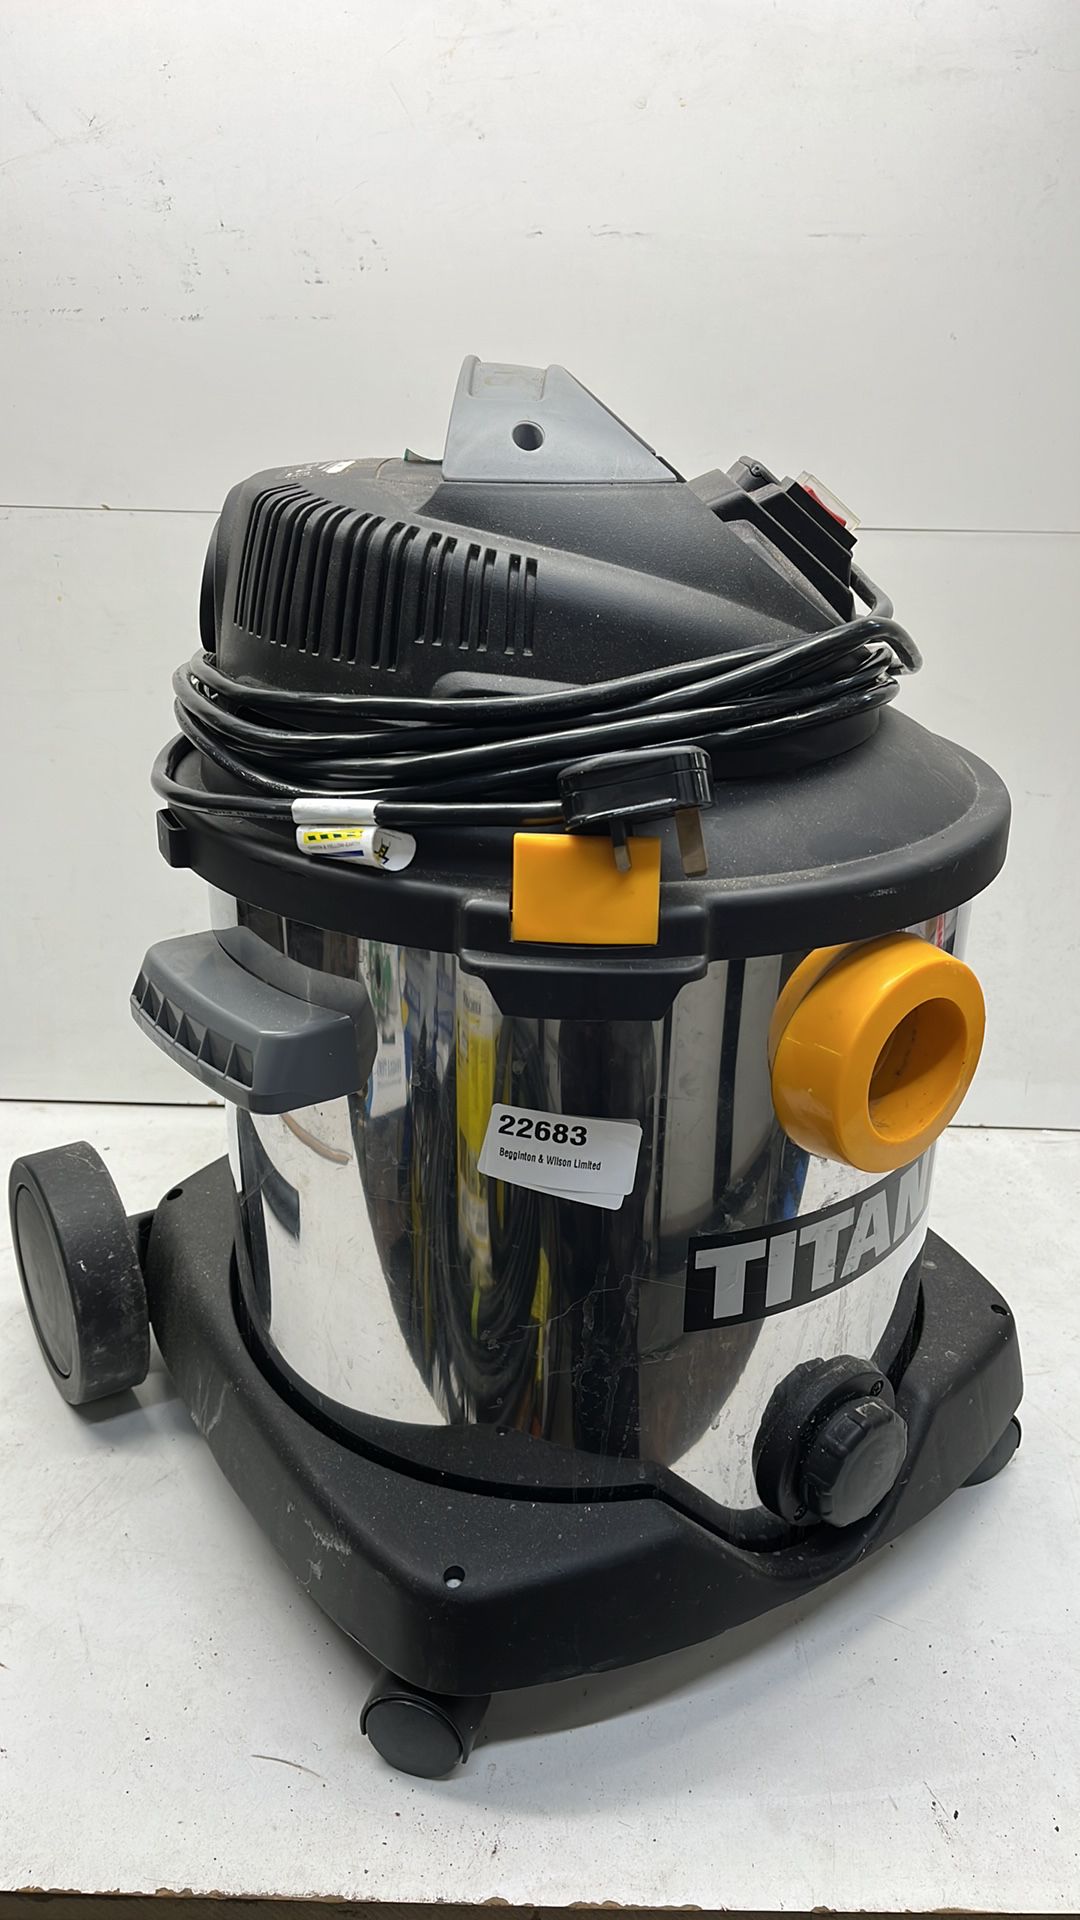 Titan TTB430VAC Wet/Dry Vacuum Cleaner - Image 2 of 3